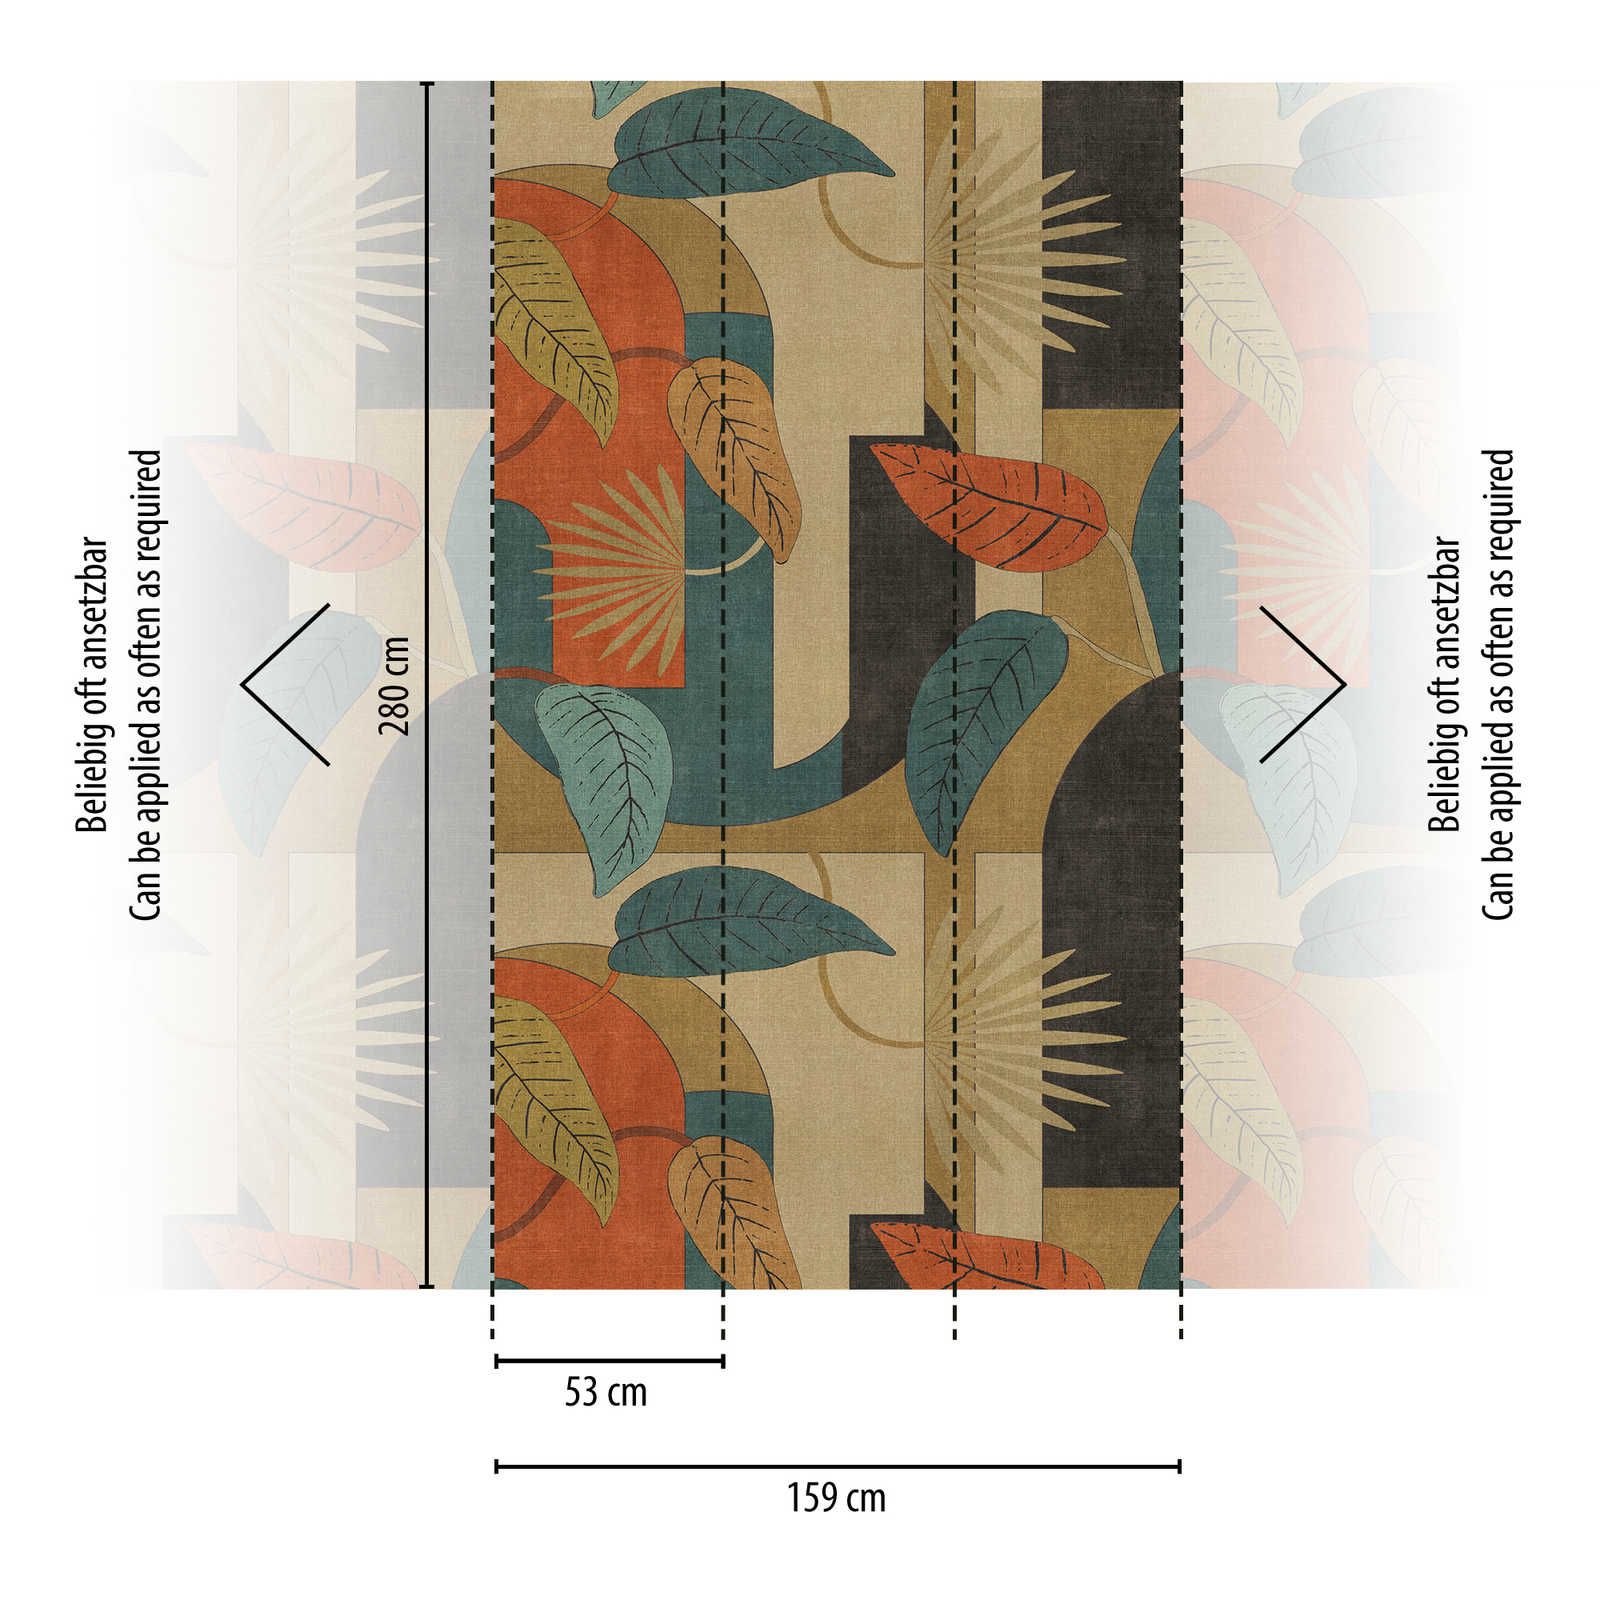             Abstract vliesbehang met bladeren en grafische patronen - beige, blauw, rood
        